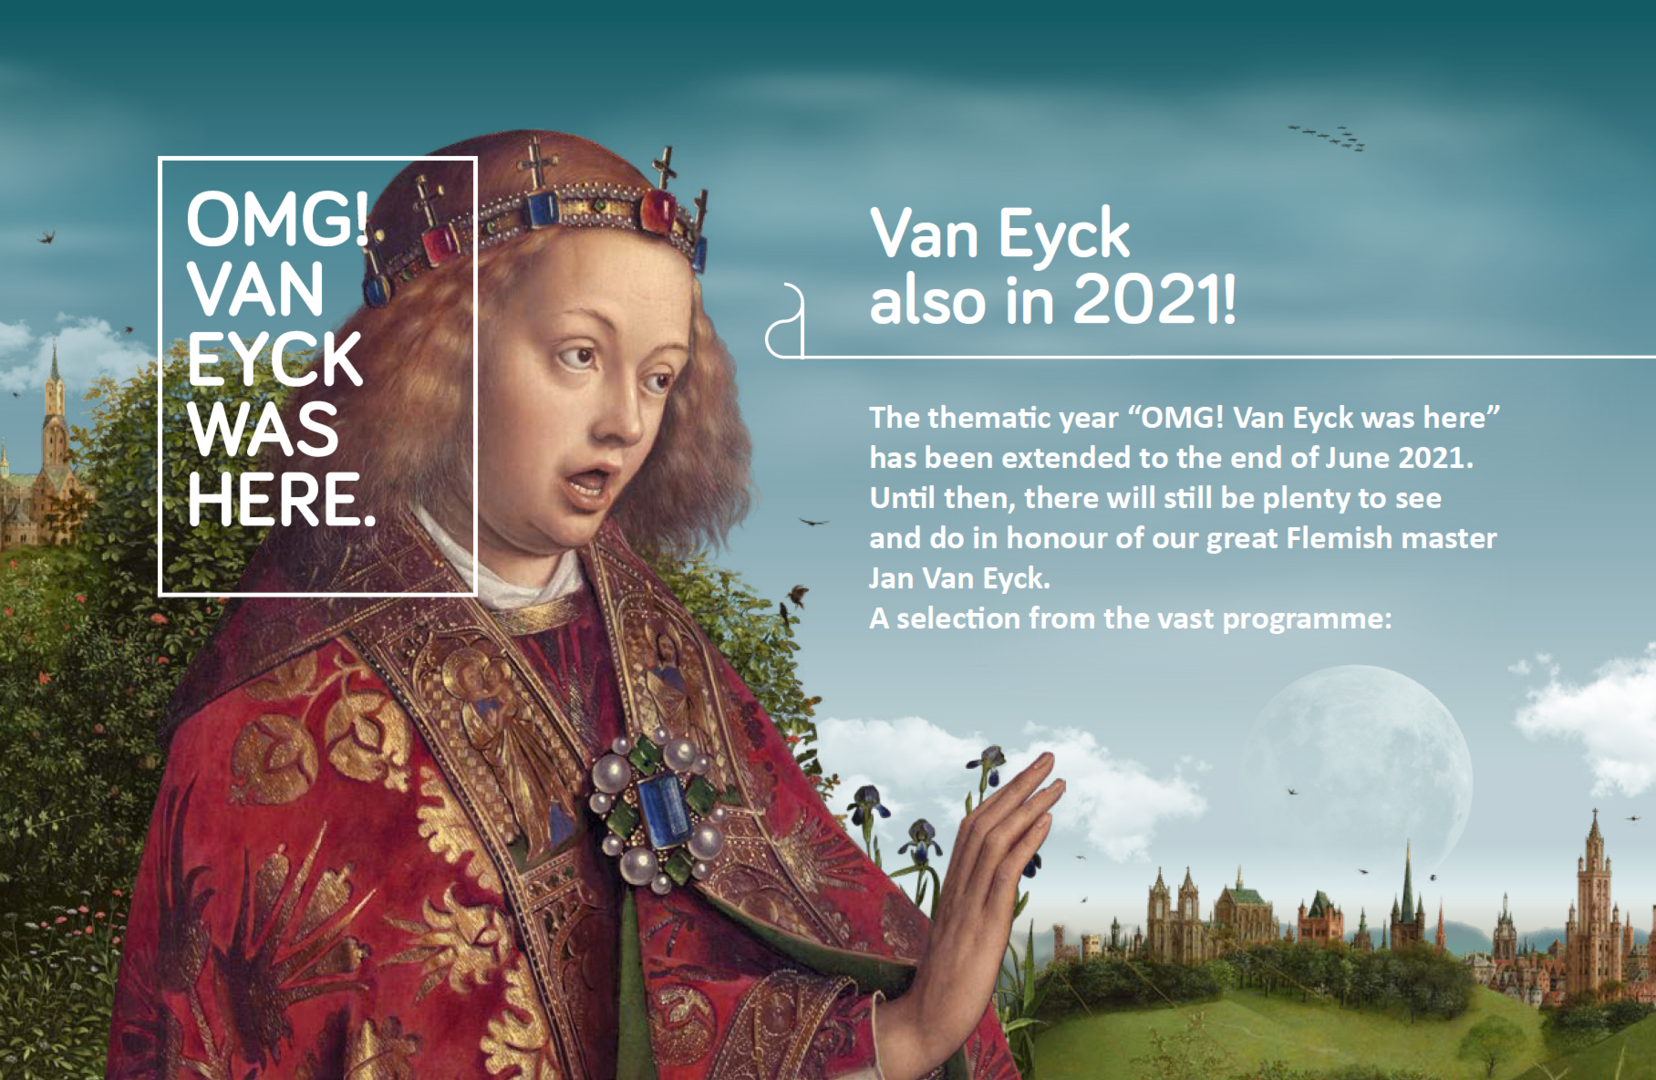 OMG! Van Eyck was here. Also in 2021!